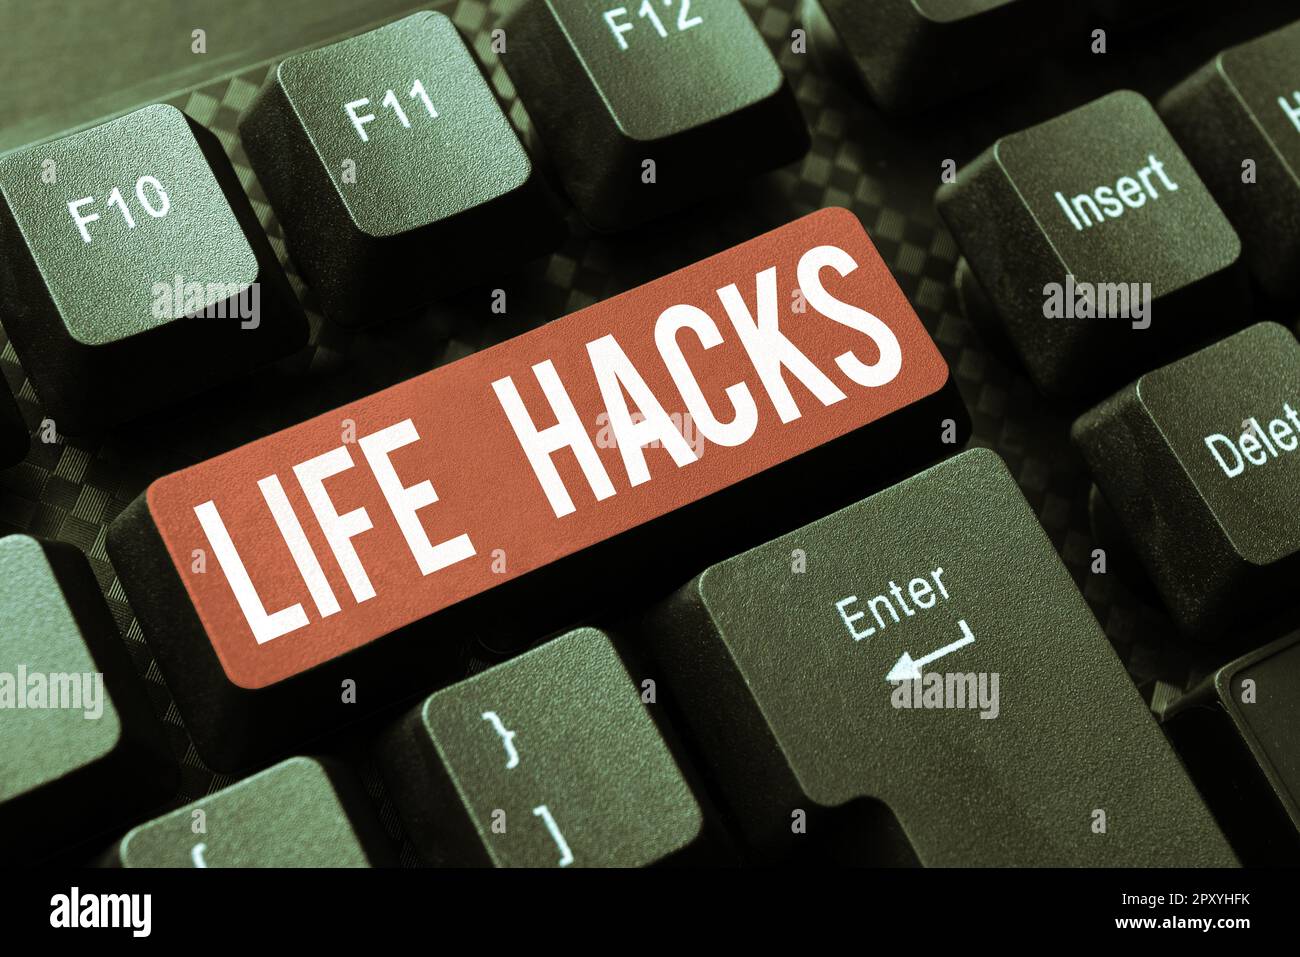 Texte montrant inspiration Life Hacks, concept Internet technique de stratégie pour gérer les activités quotidiennes plus efficacement Banque D'Images